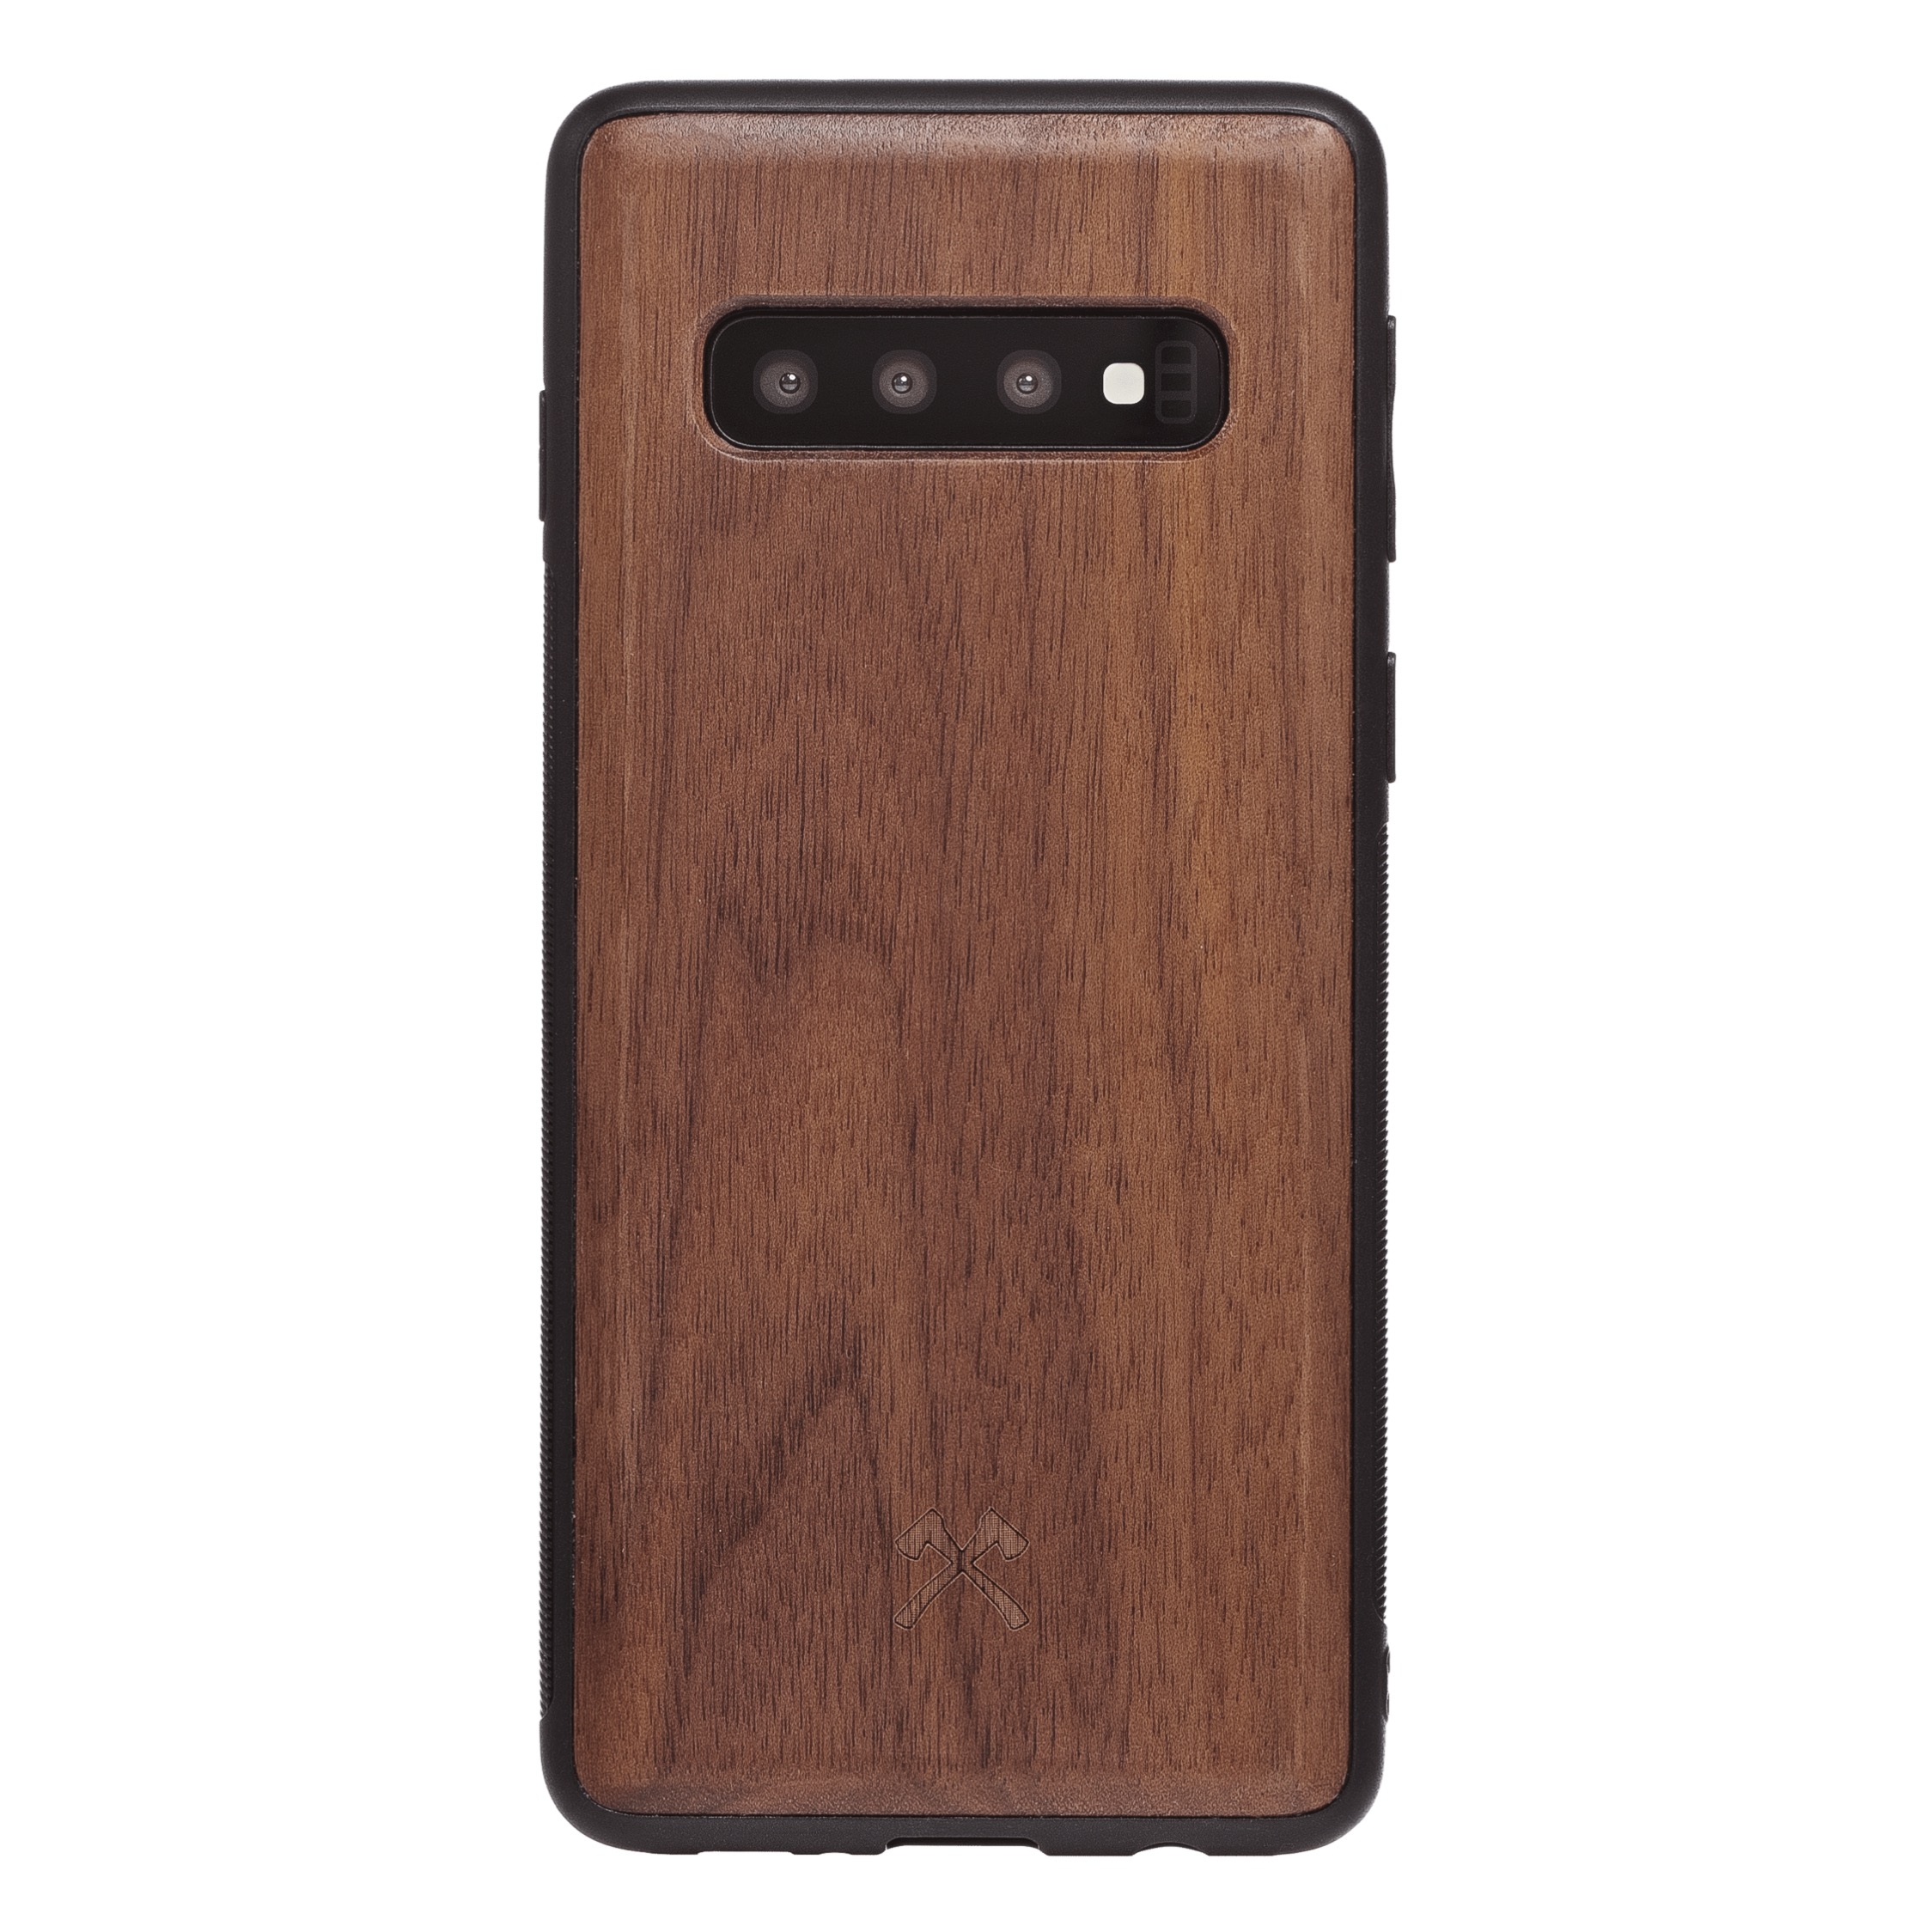 Dark Forest Samsung S10 Case